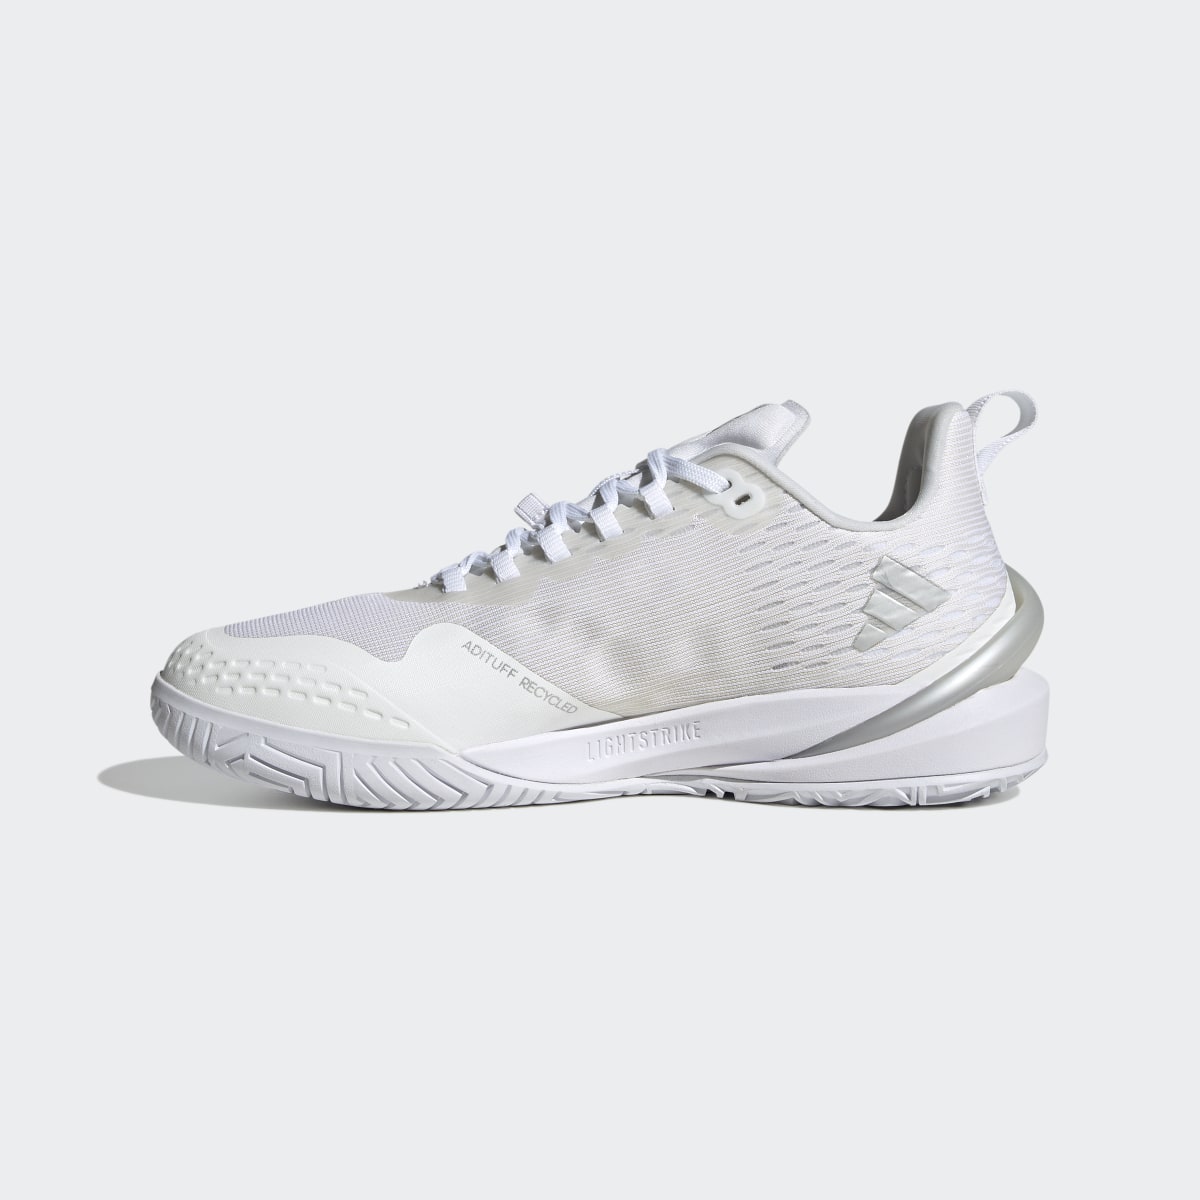 Adidas adizero Cybersonic Tennis Shoes. 10